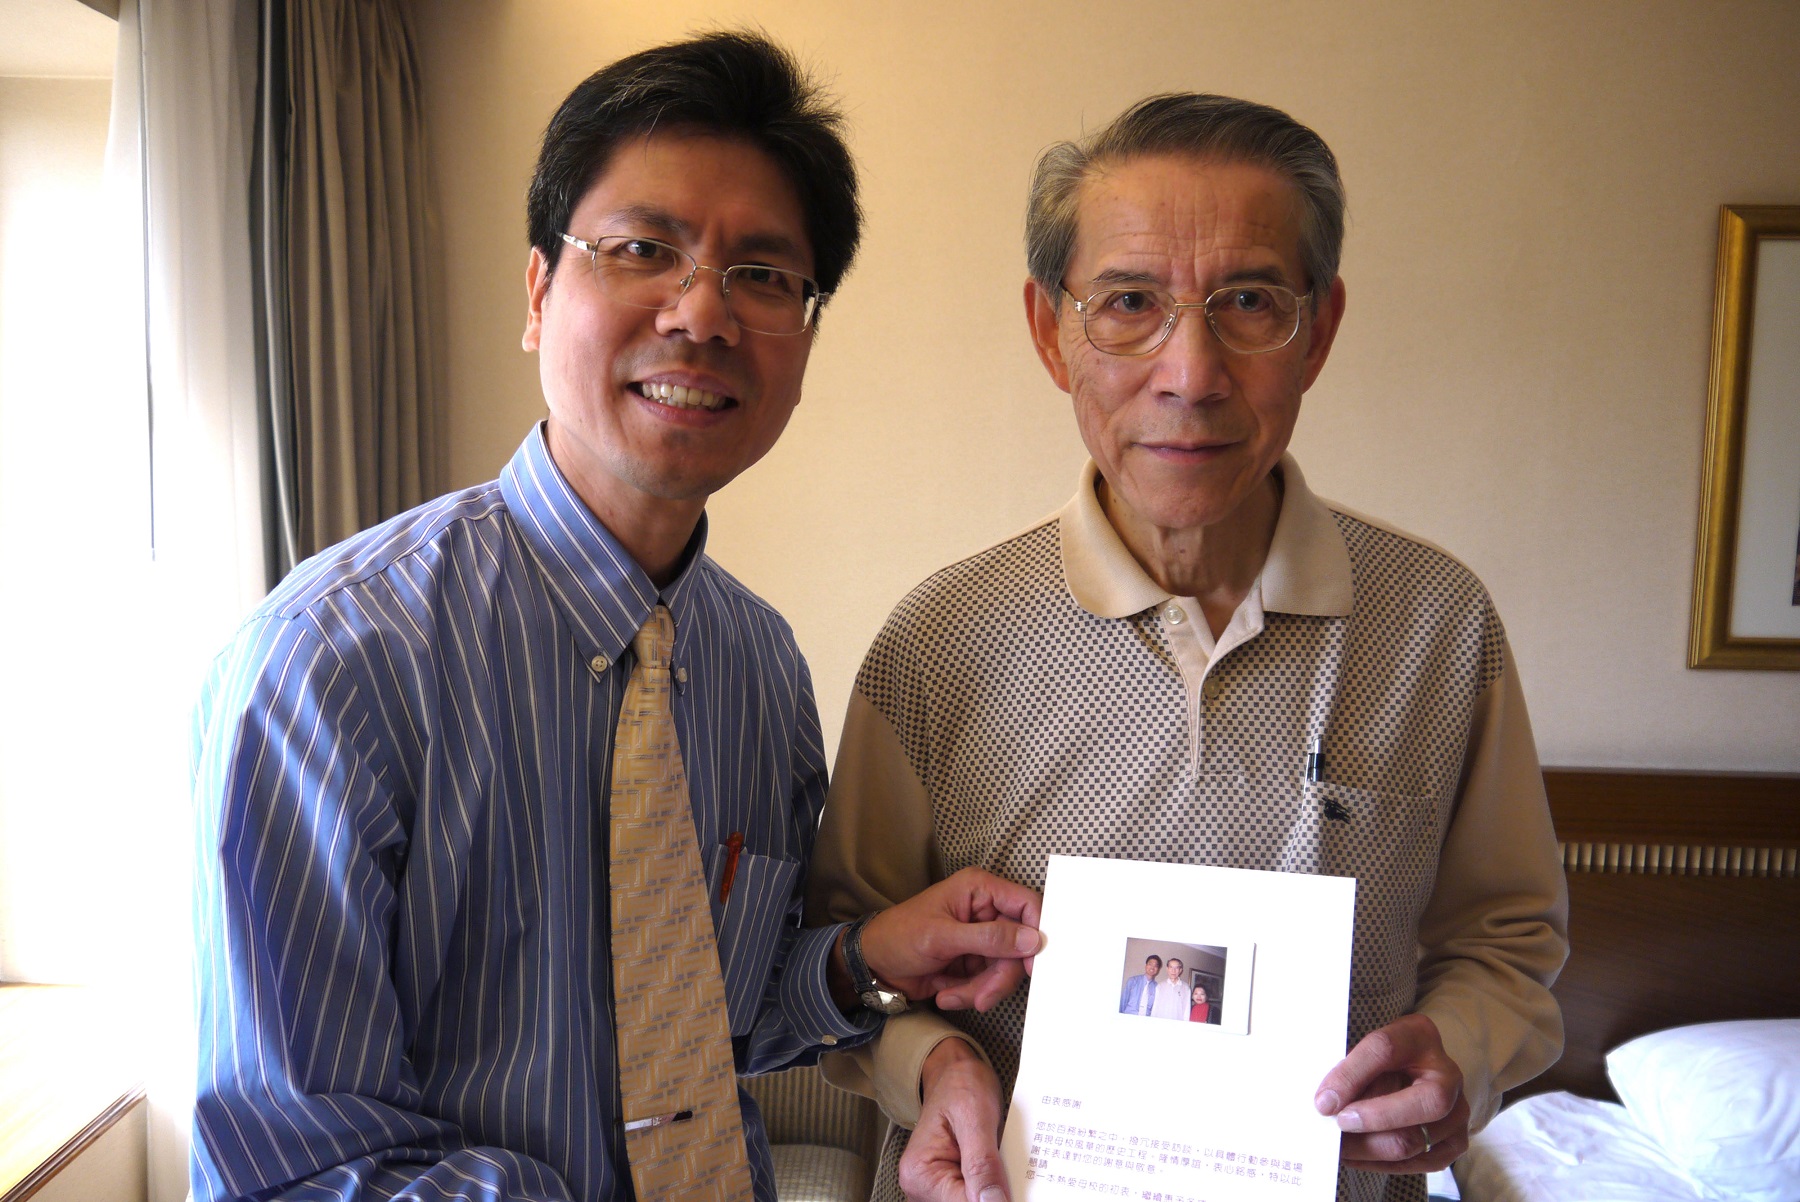 口述訪談團隊陳祥美老師（左）於採訪後致贈感謝函給沈鑒治學長（右）